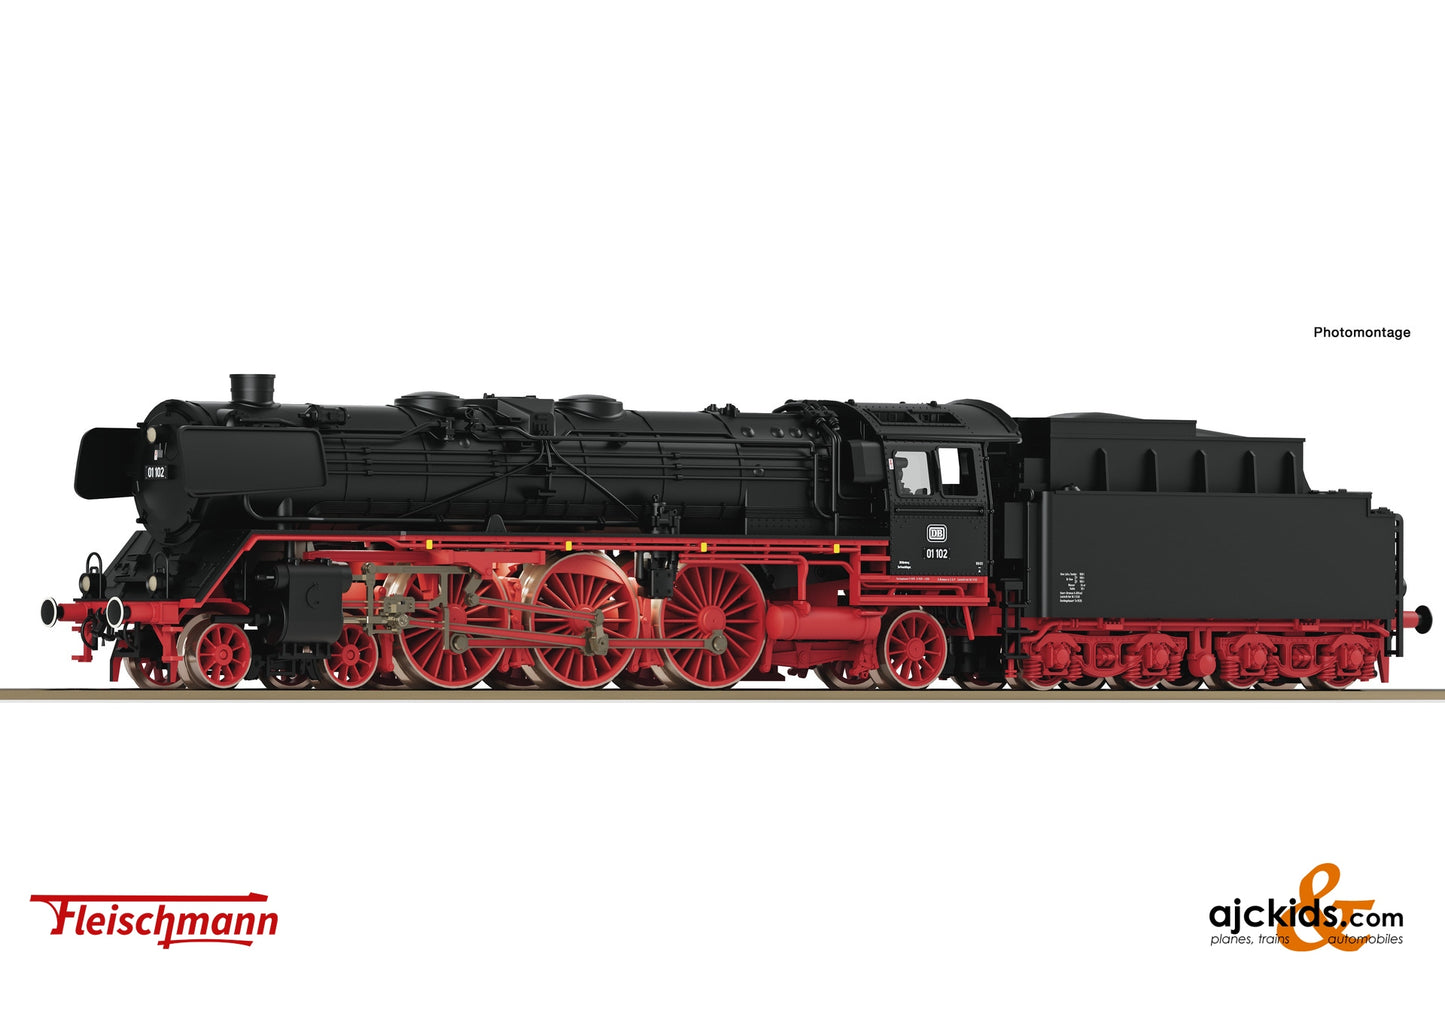 Fleischmann 714575 - Steam locomotive 01 102, DB at Ajckids.com